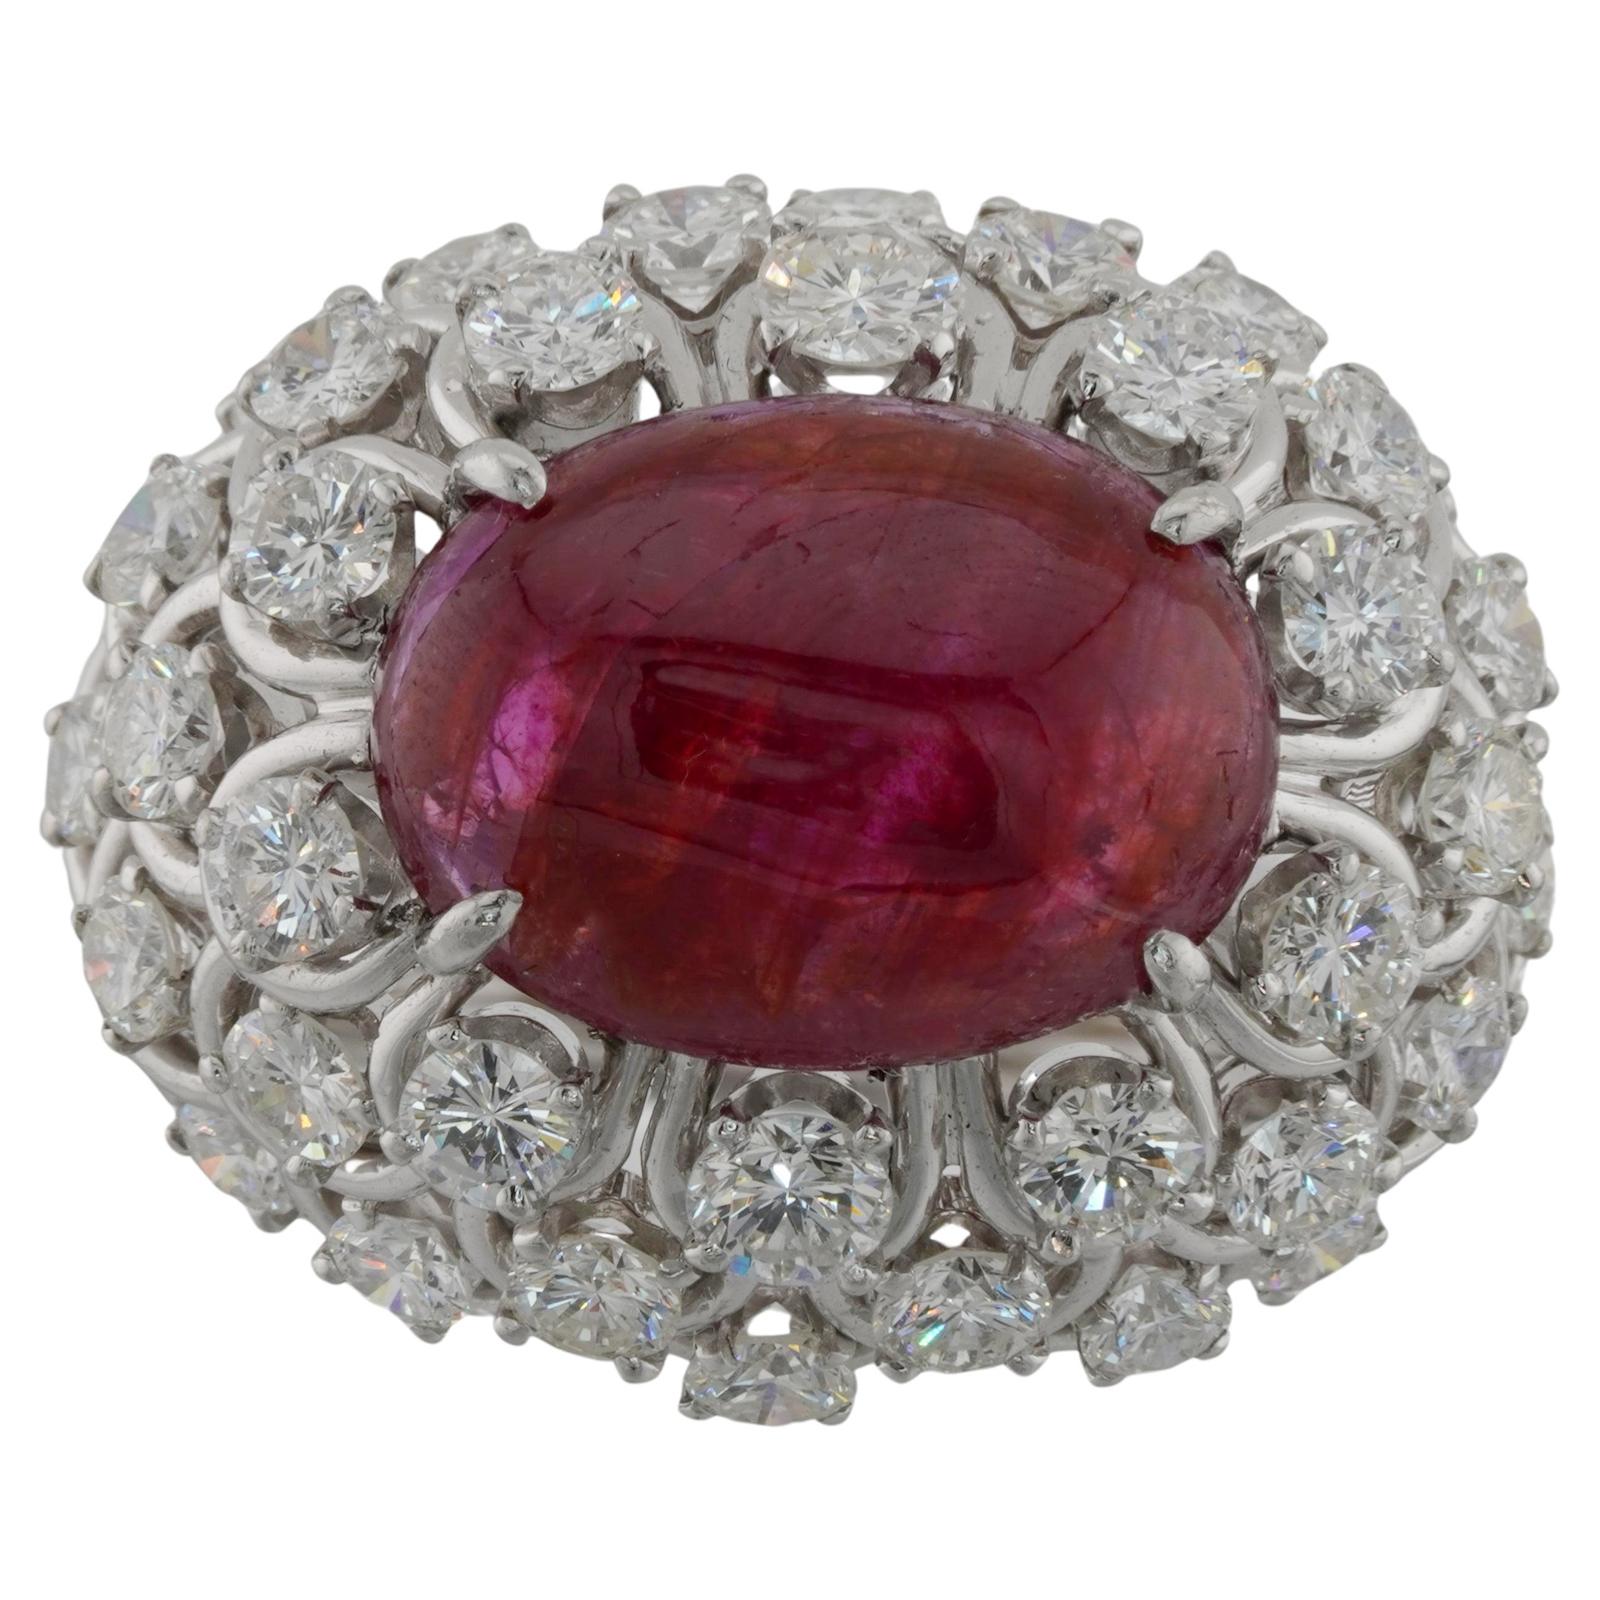 Cette bague captivante de David Webb présente une couronne en forme de dôme au design ouvert, sertie d'un rubis cabochon ovale de 11,0 mm x 15,0 mm et entourée de 36 diamants ronds étincelants. Réalisé en platine fin, il est complété par un ressort